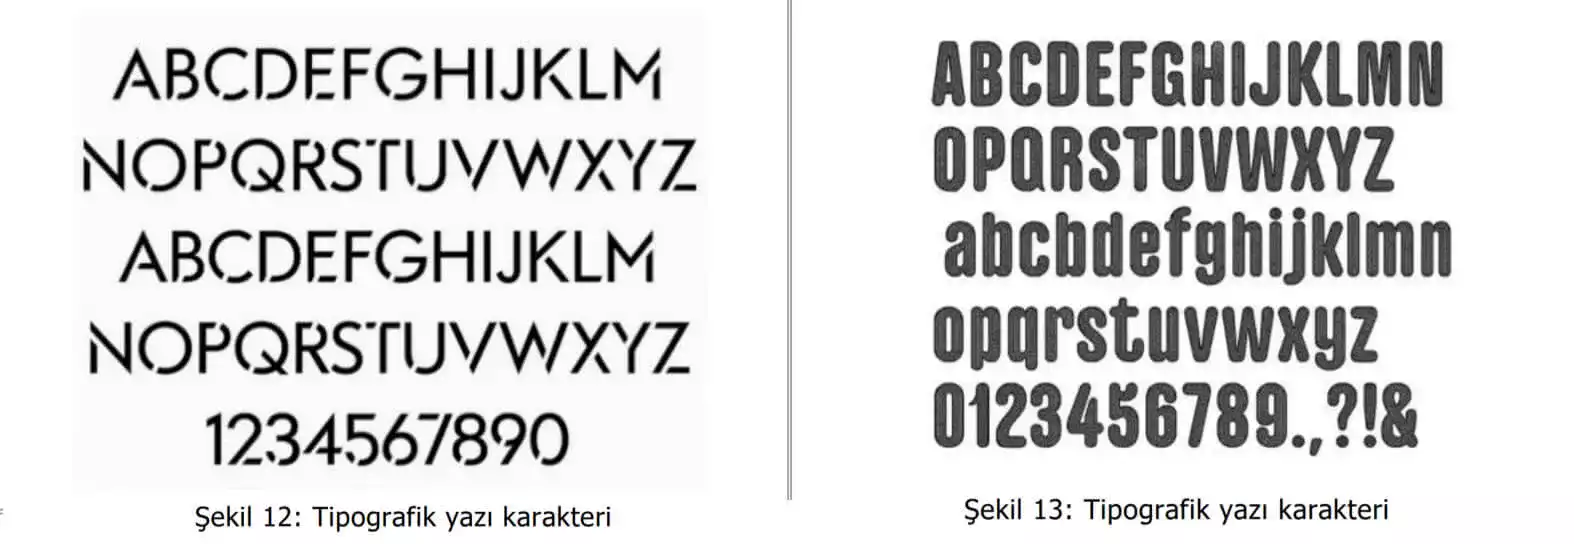 tipografik yazı karakter örnekleri-Kütahya Patent